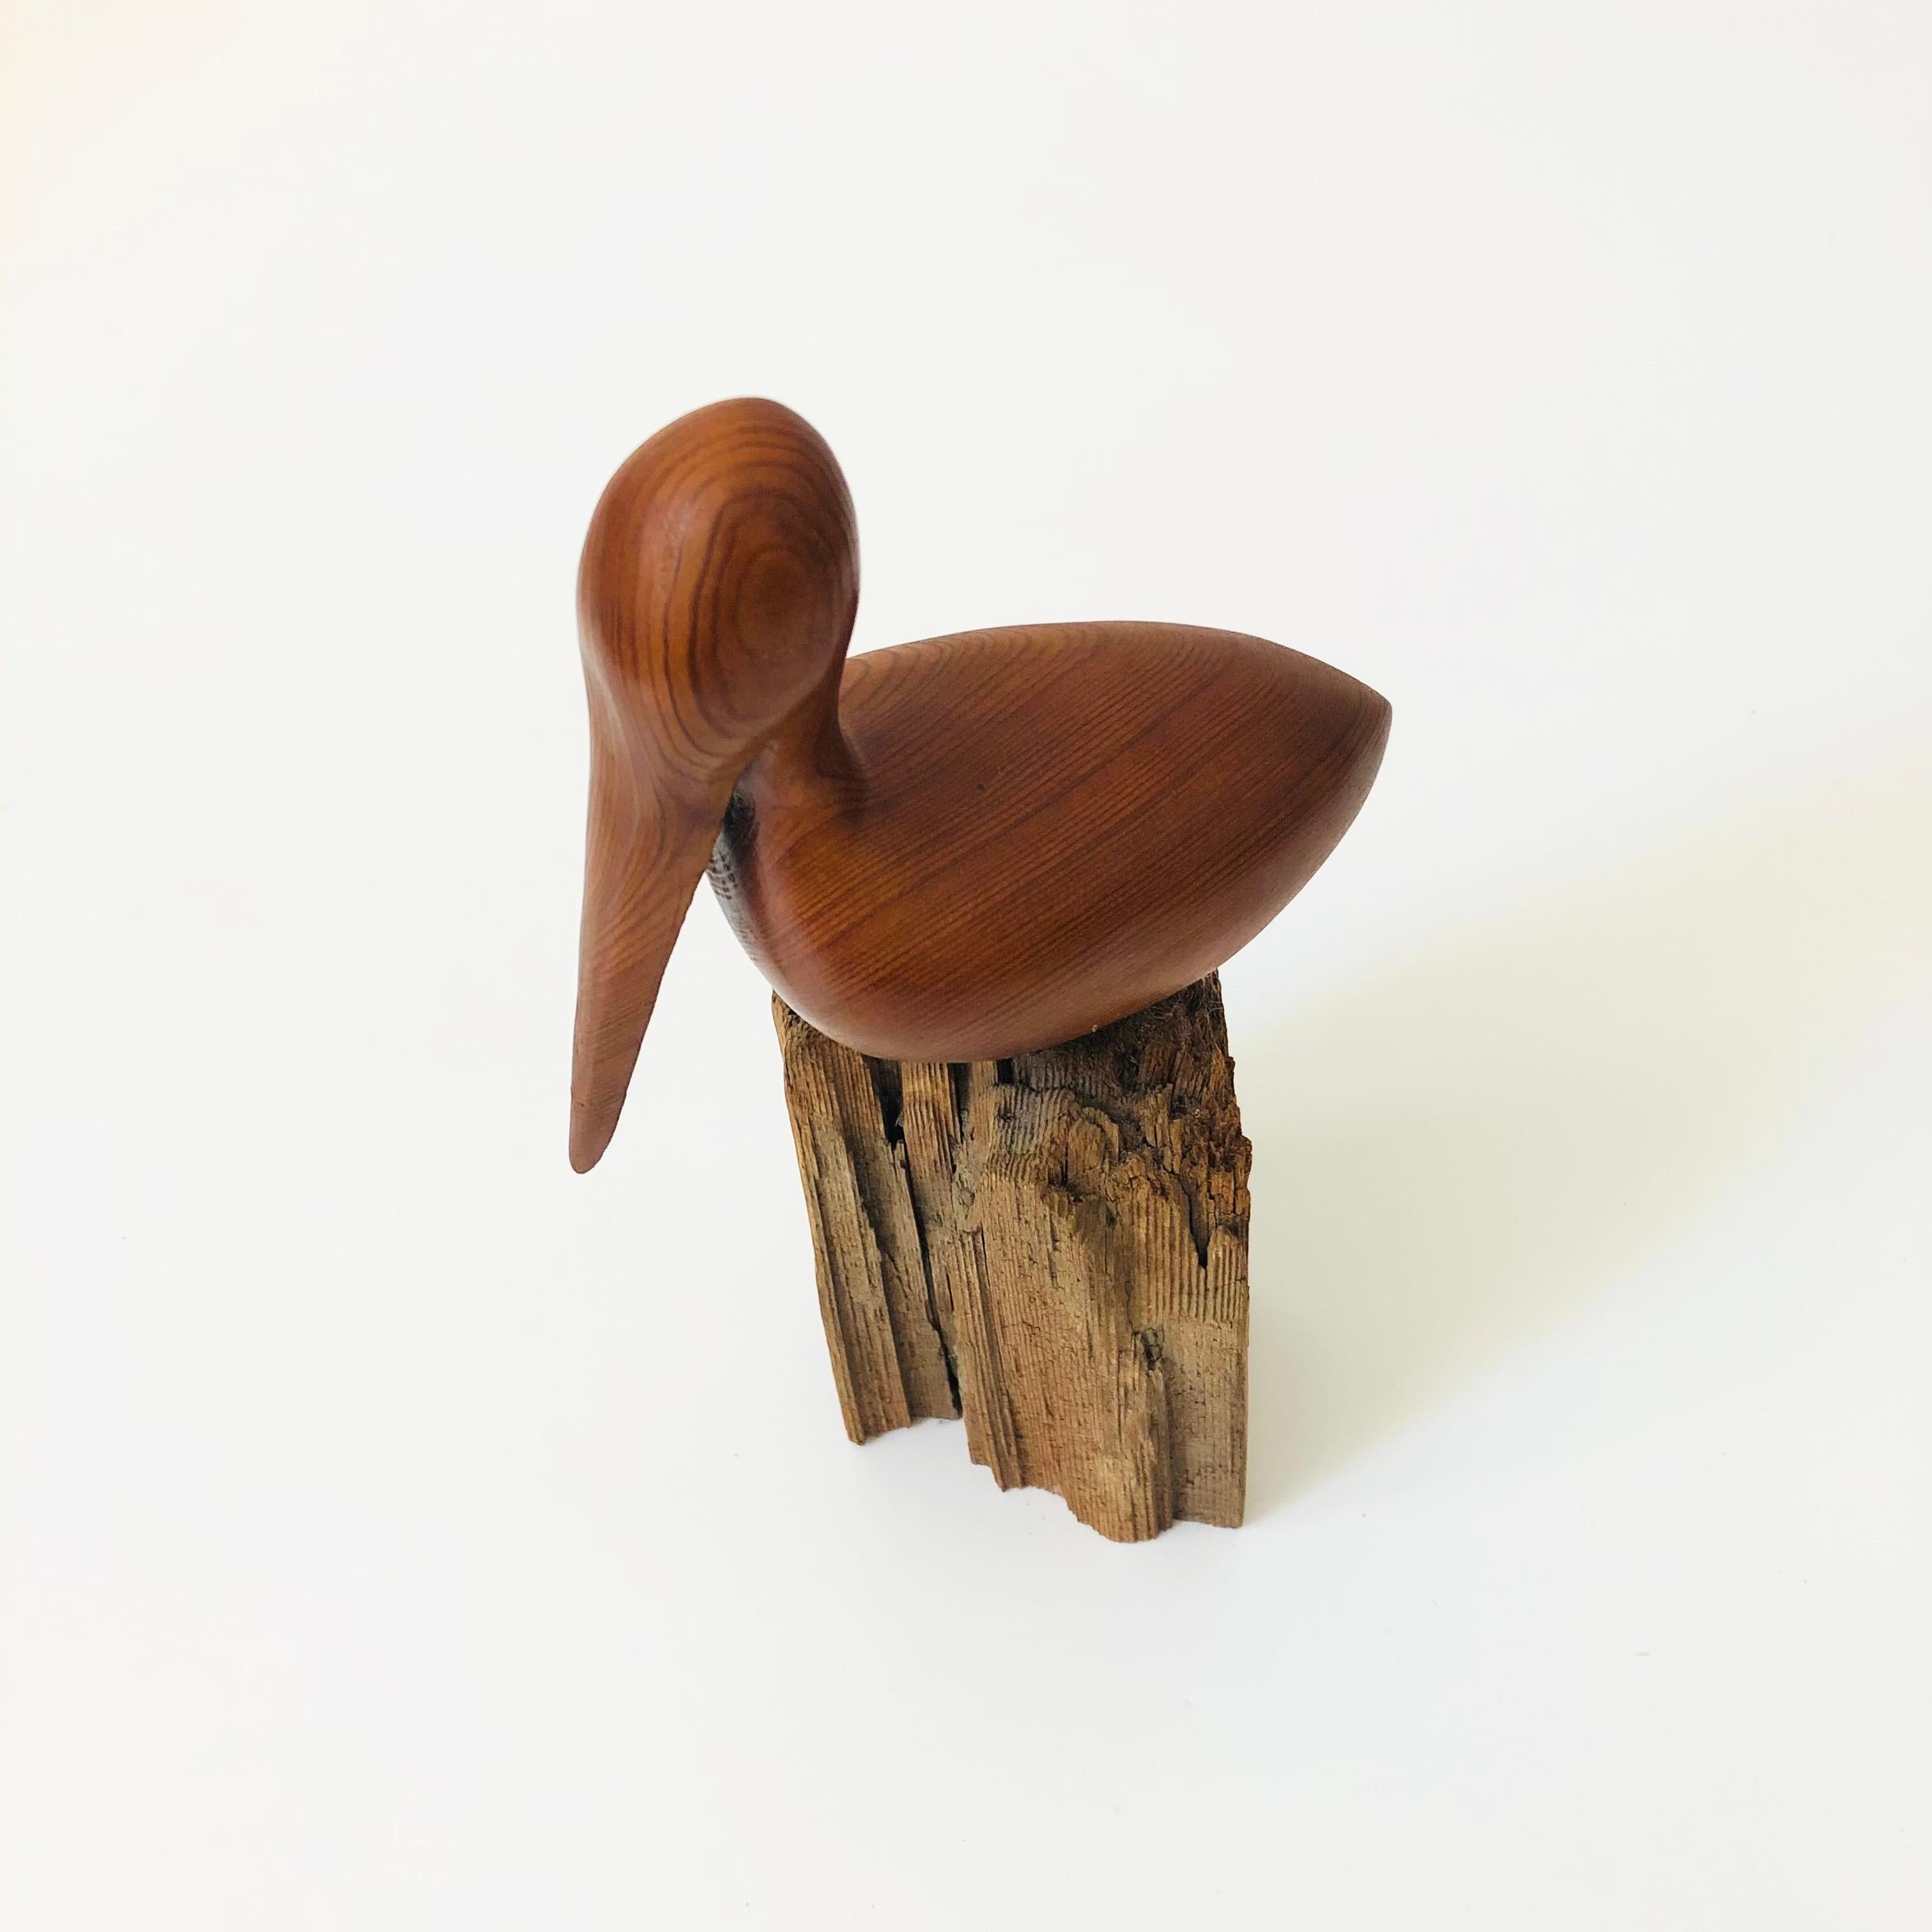 Un pélican vintage en bois sculpté. Fabriqué en teck sculpté et monté sur une base en bois flotté naturel contrastant. Une belle forme simple et minimaliste. Signée sur la base 